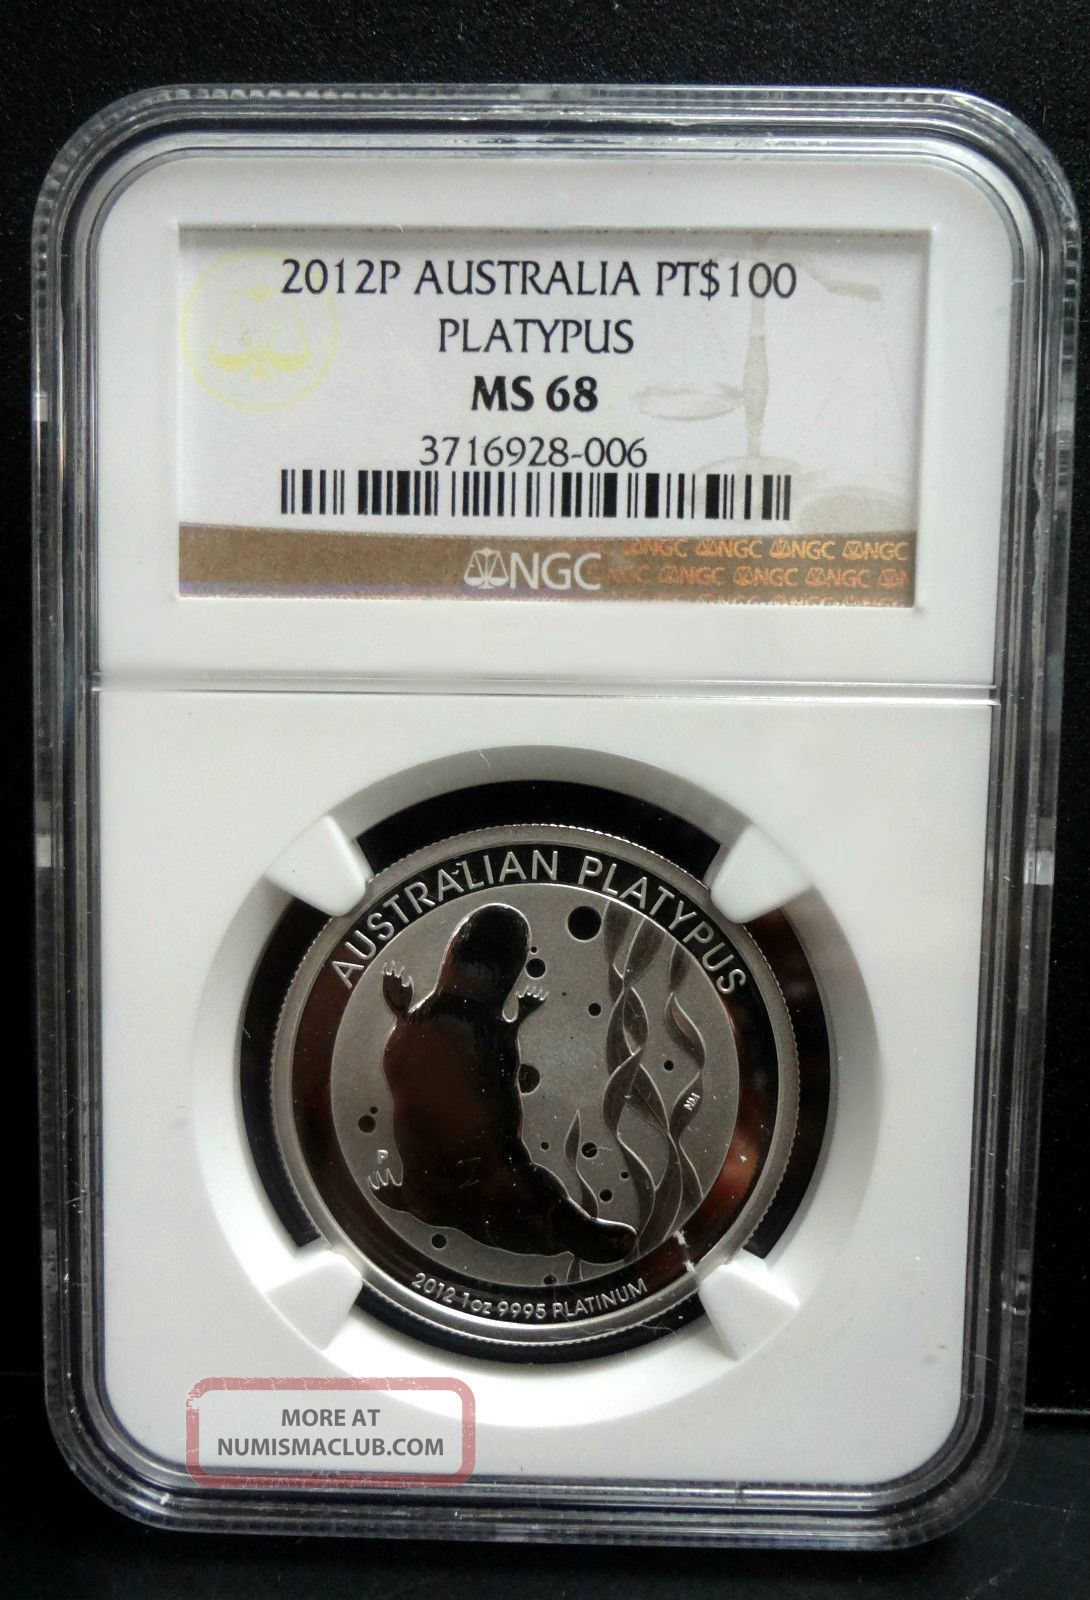 2012 P Australia $100 Platipus 1oz. 9995 Platinum Bullion Coin Ngc Ms 68